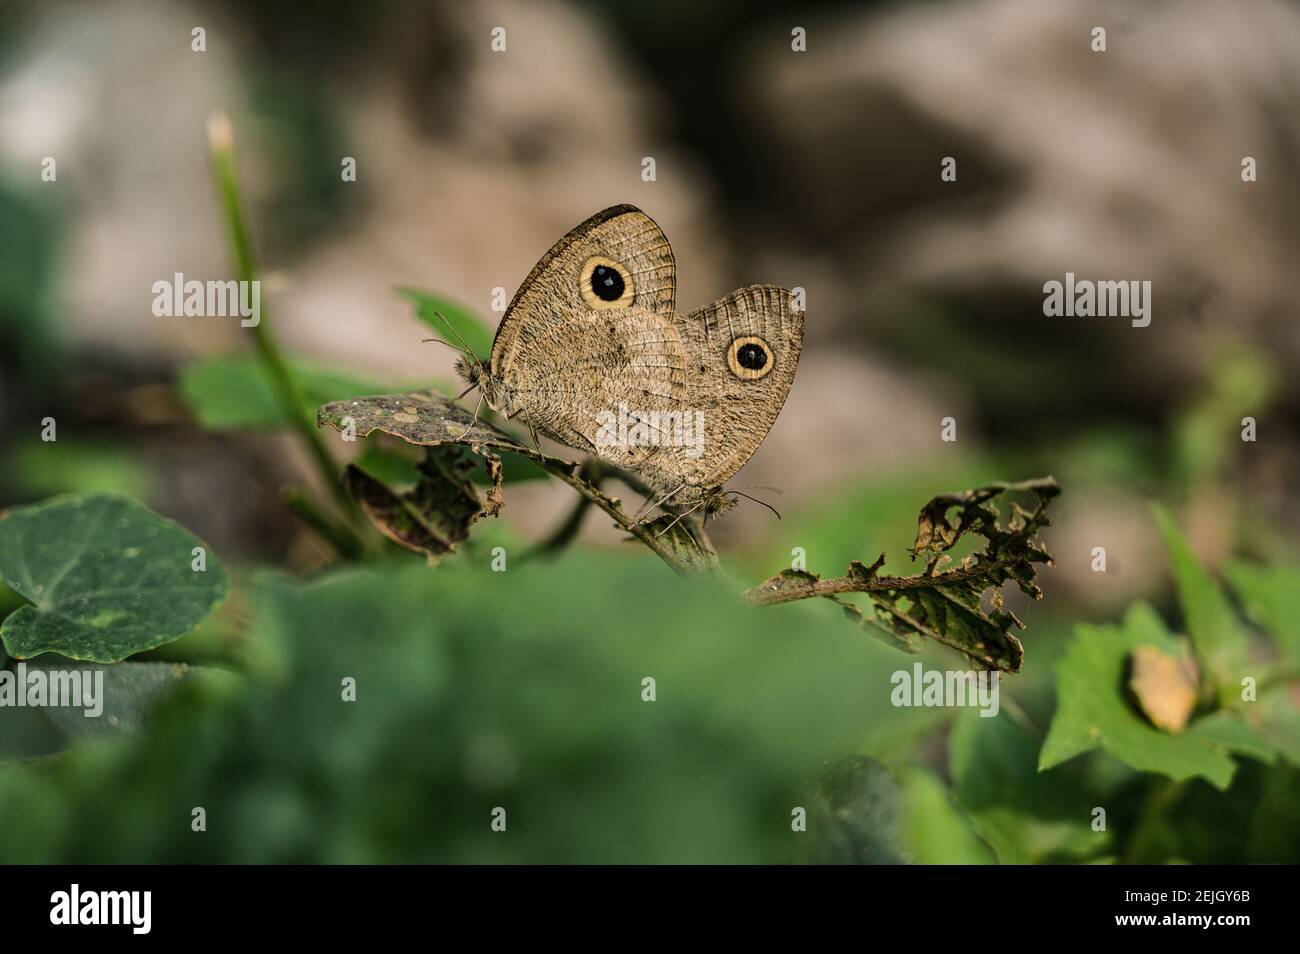 Das gemeinsame Five-Ring (Ypthima Baldus) Schmetterlingspaarpaar. Es ist eine Art von Satyrinae Schmetterling in Asien gefunden. Tehatta, Westbengalen. Indien. Stockfoto